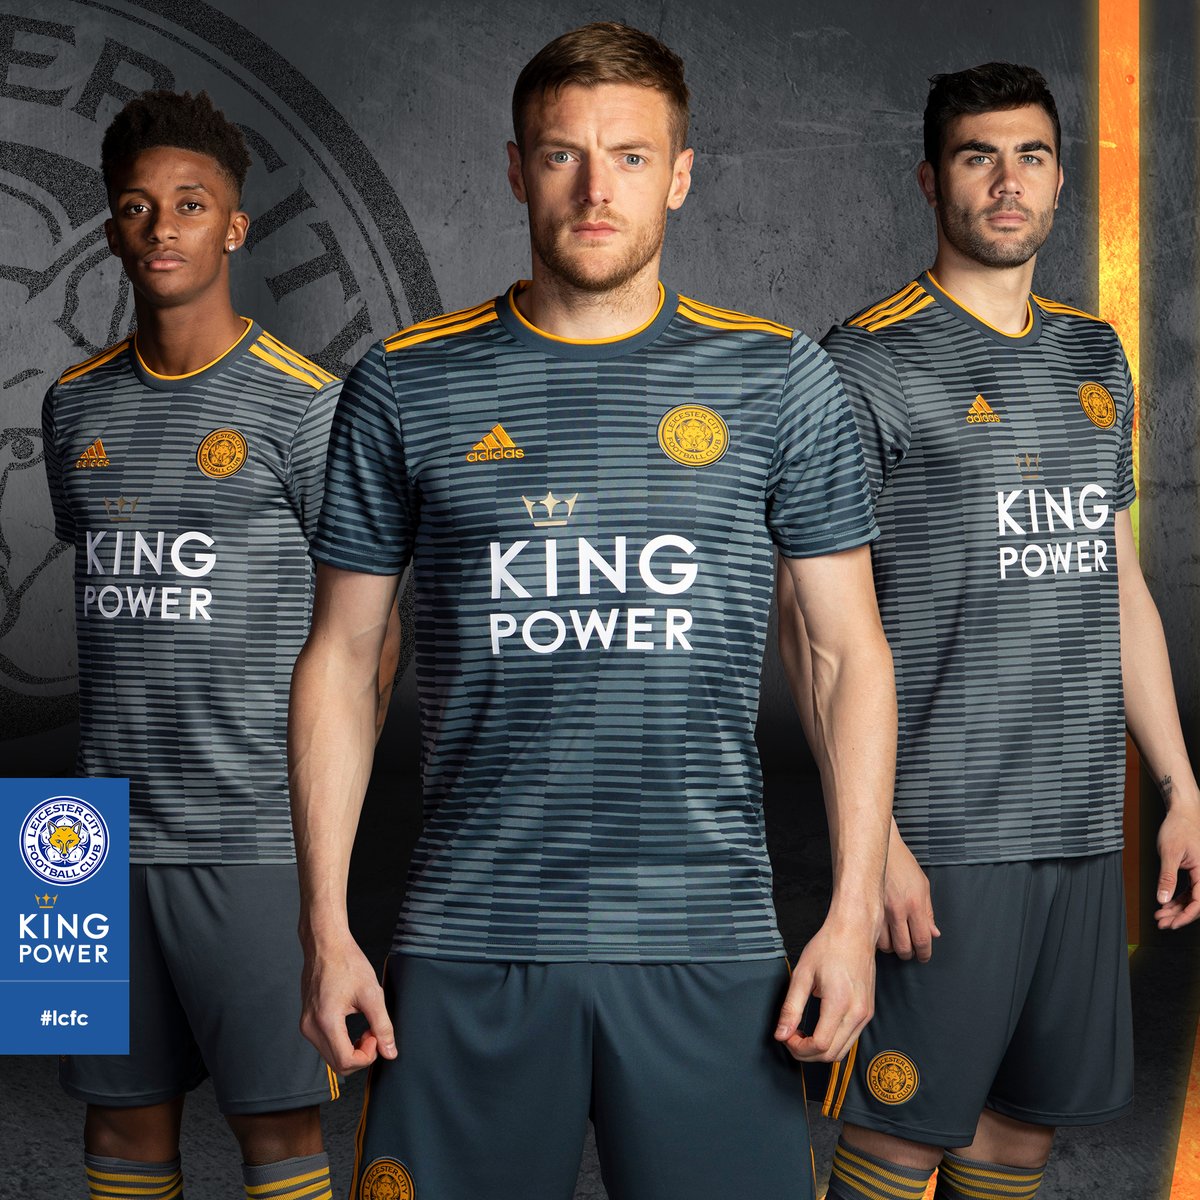 Lounge optillen Disciplinair Leicester City 2018-19 Adidas Away Kit - Football Shirt Culture - Latest  Football Kit News and More